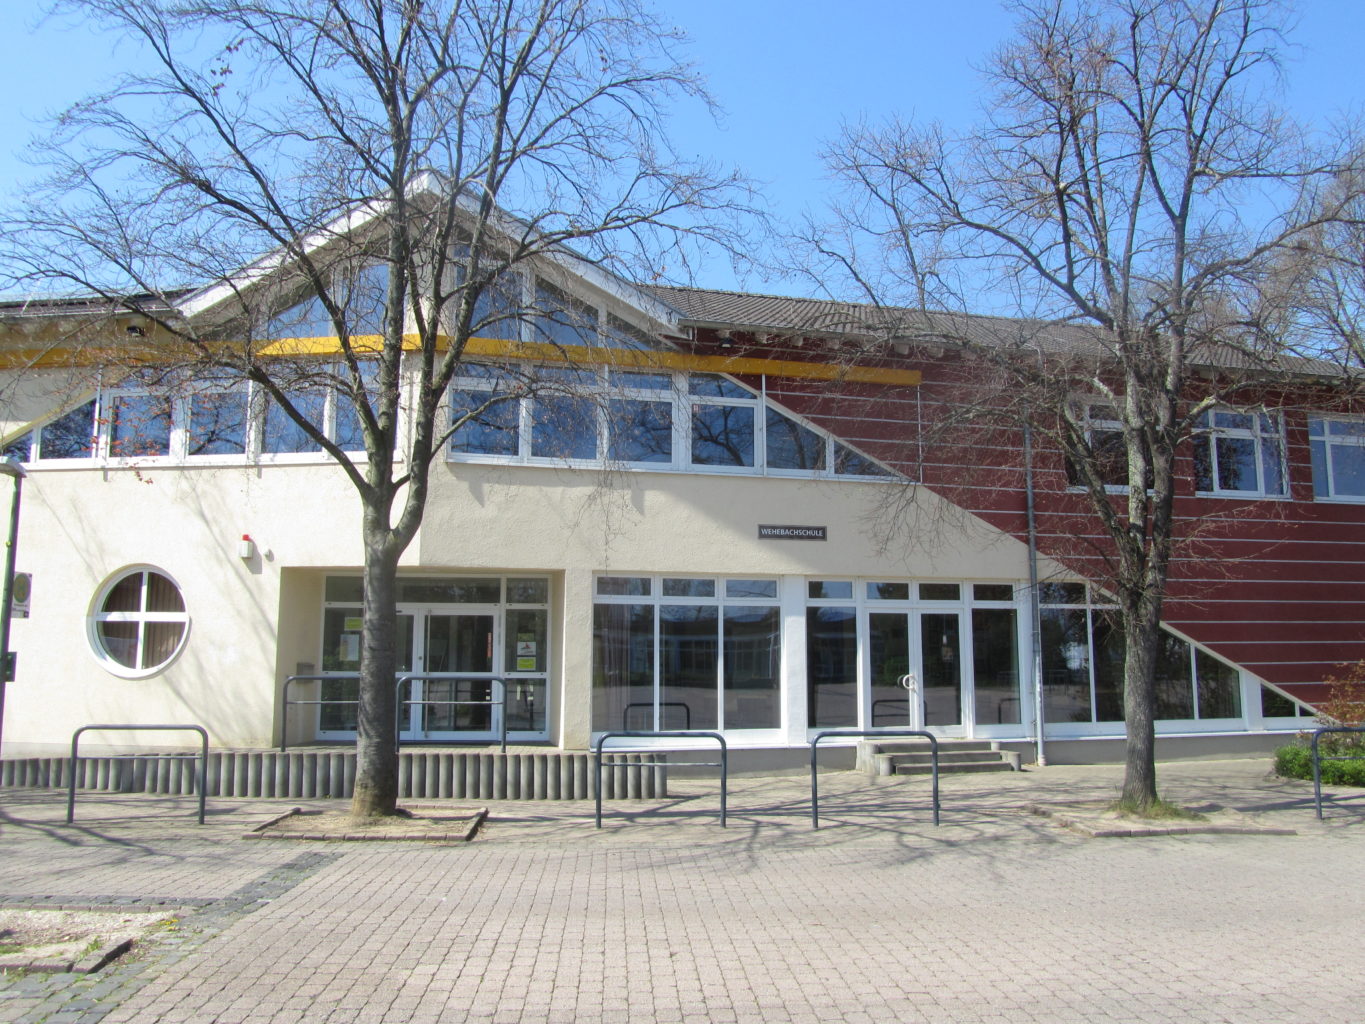 Wehebachschule Langerwehe